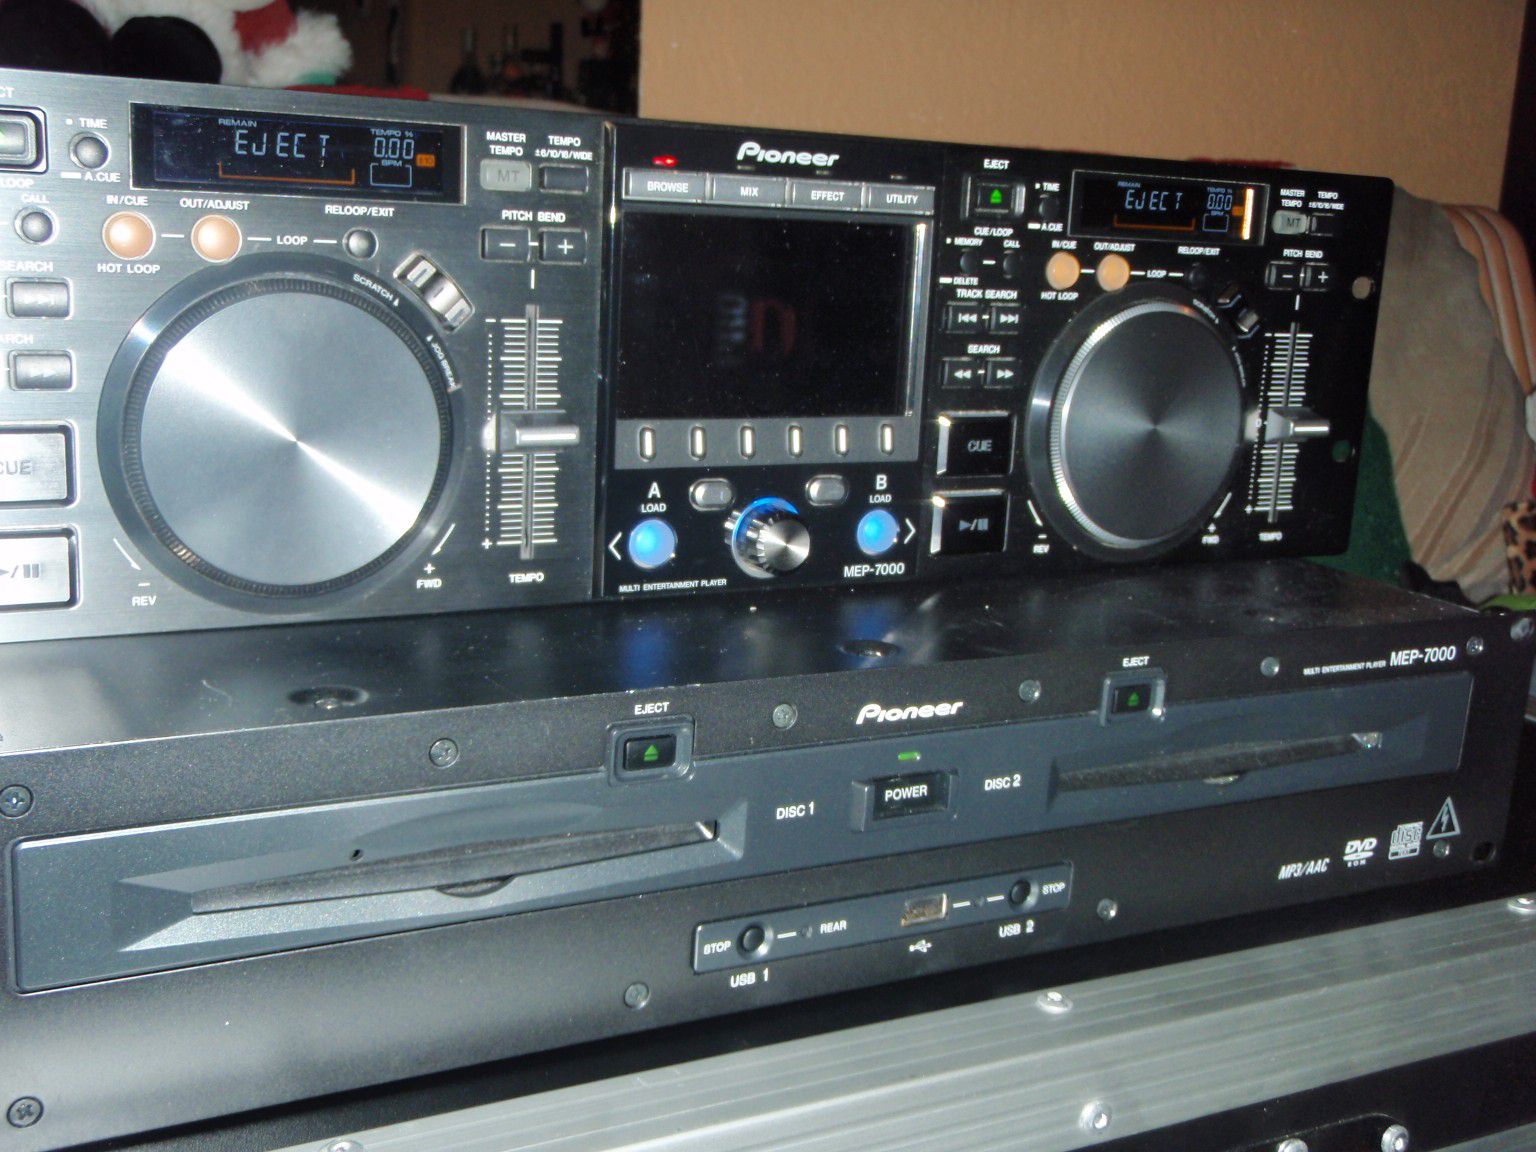 Free Pioneer mep-7000 DJ CD player